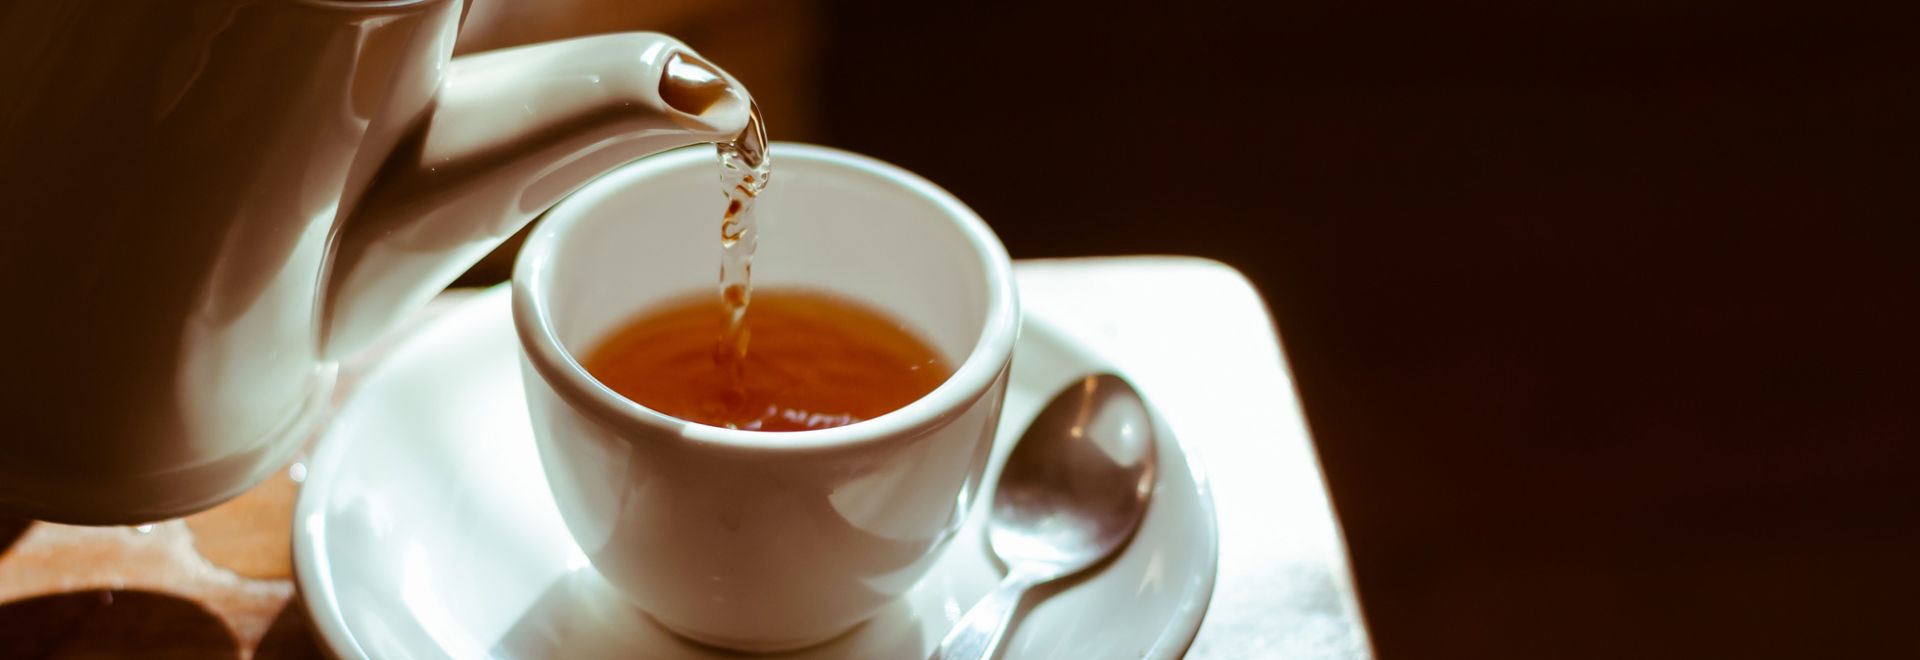 Chá de cidreira é o mais consumido pelos portugueses (uma notícia para relaxar)